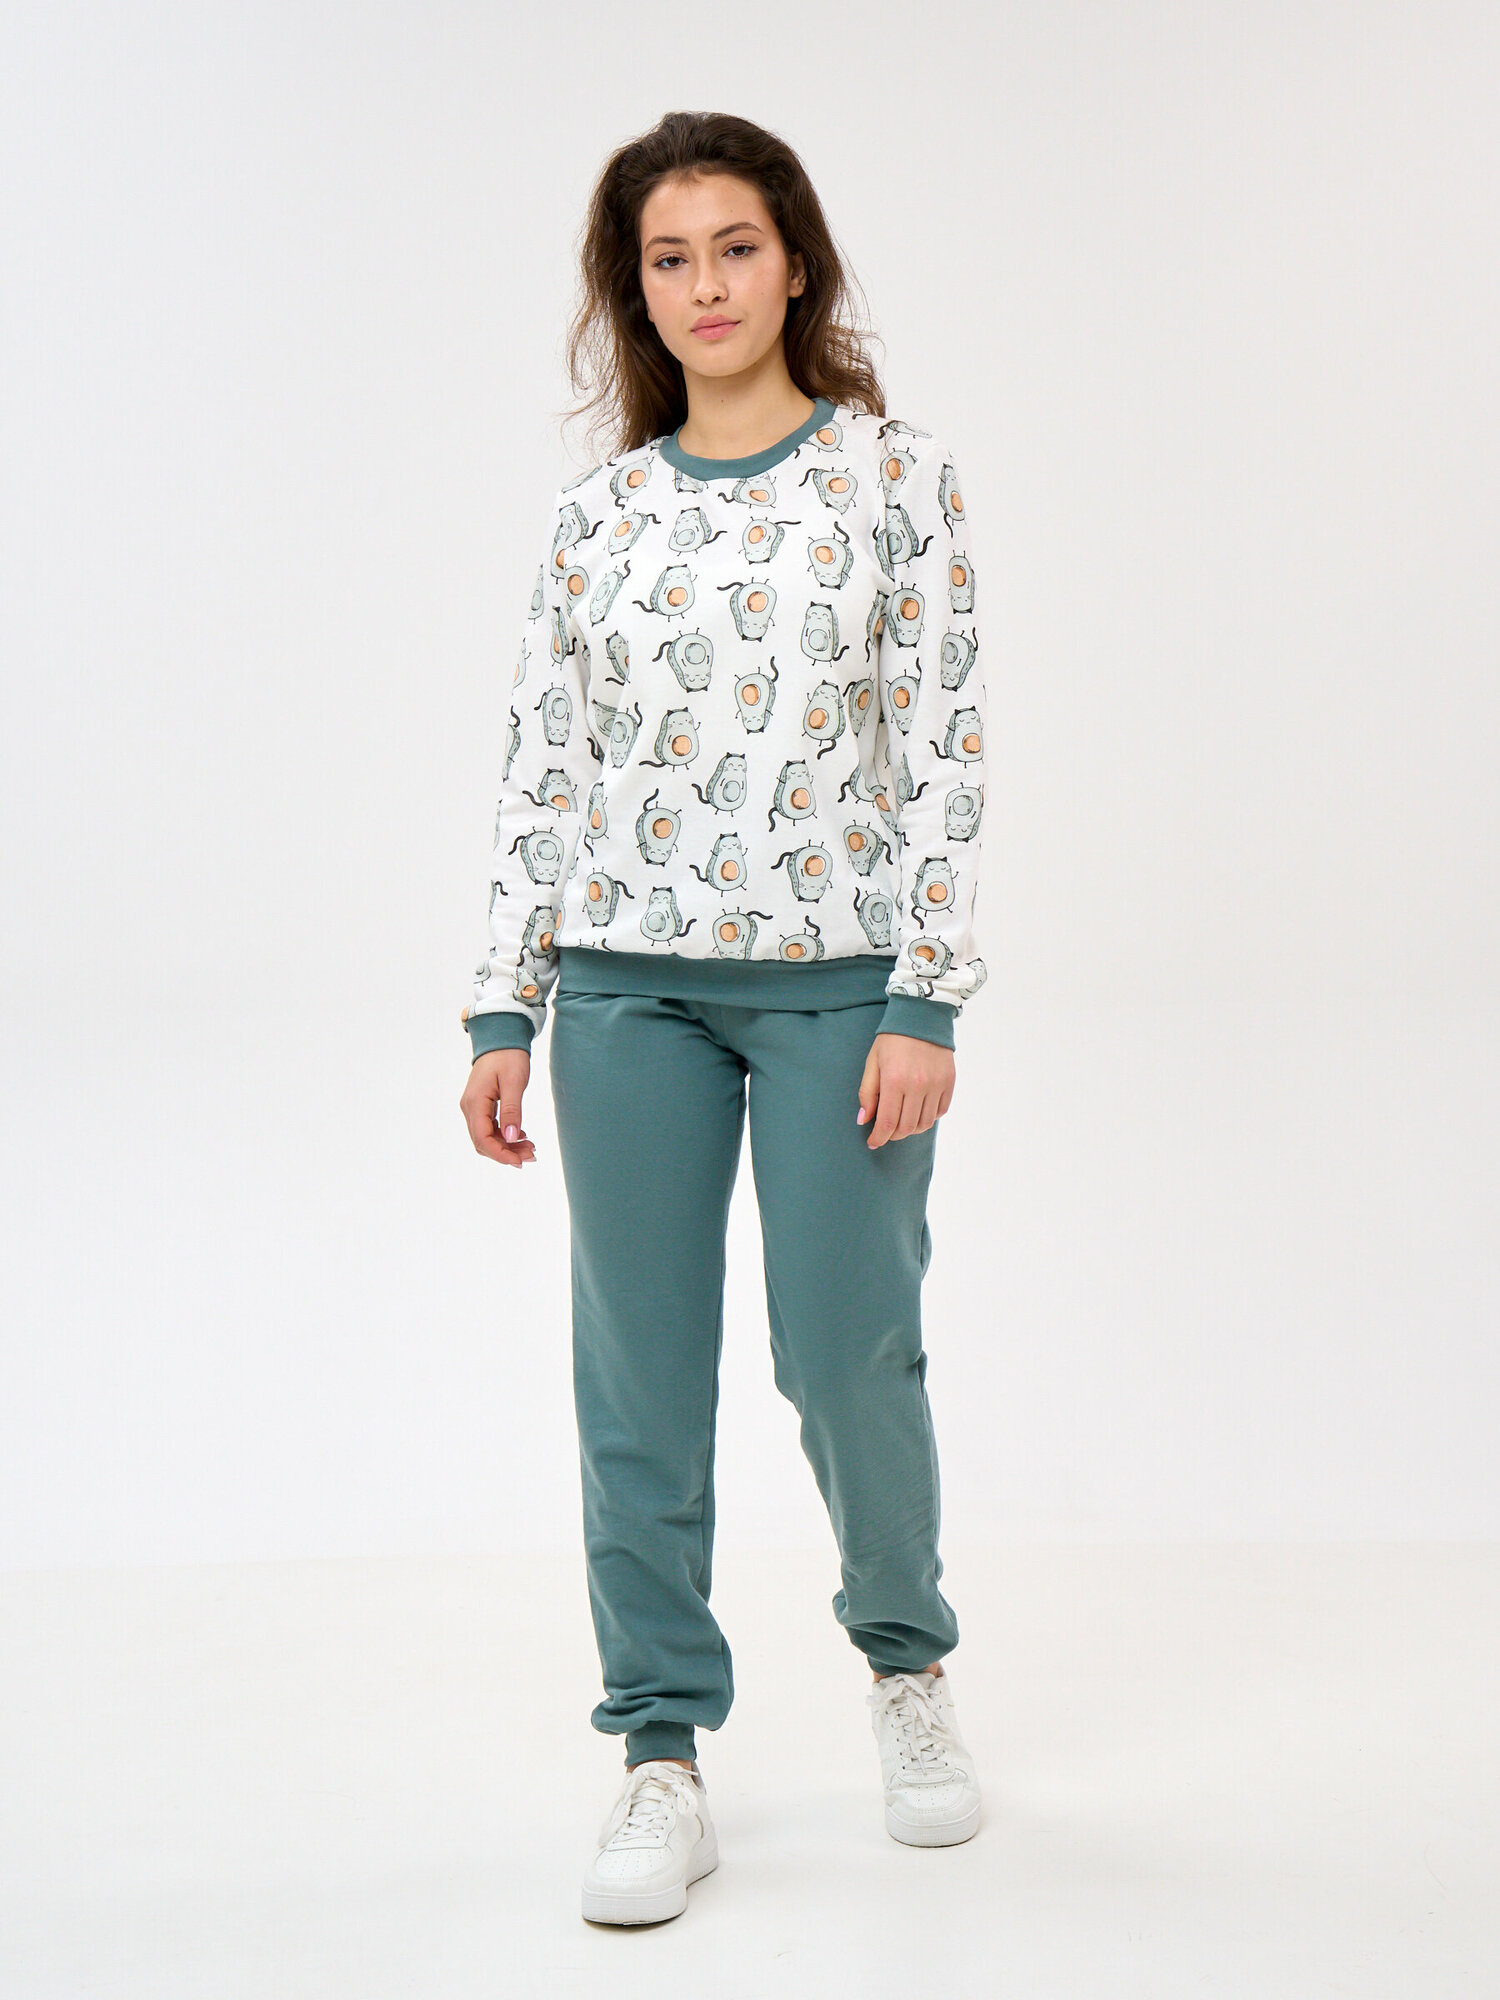 Пижама Монотекс, размер 46, белый, зеленый - фотография № 2